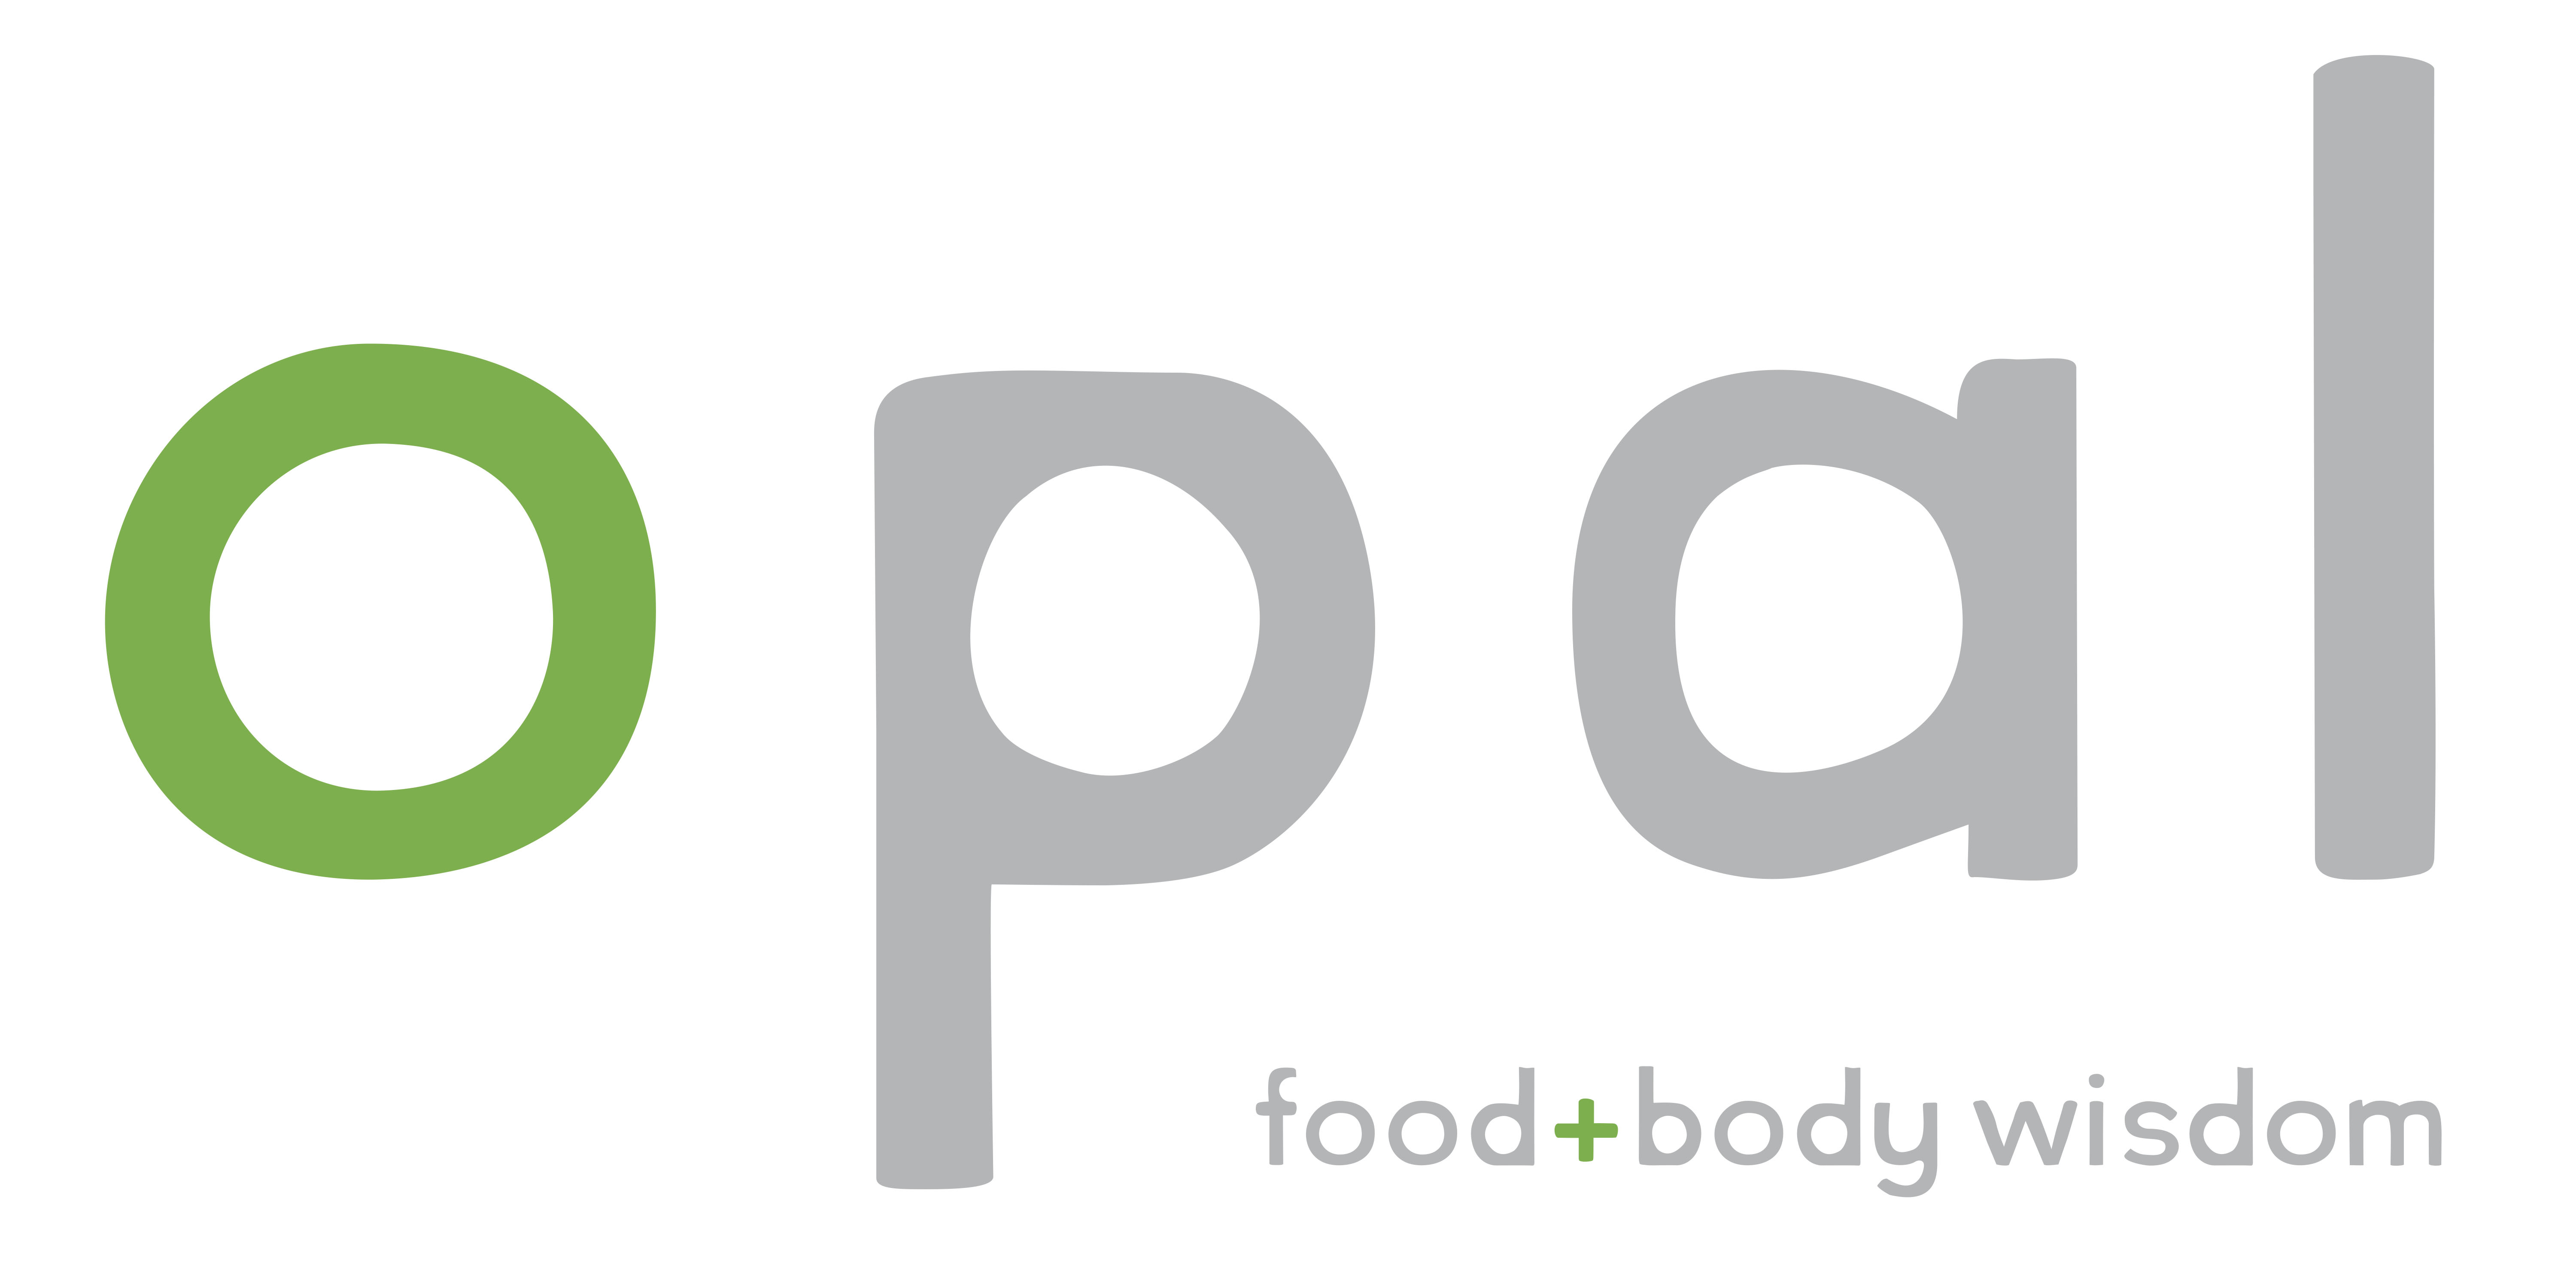 Opal: Food + Body Wisdom